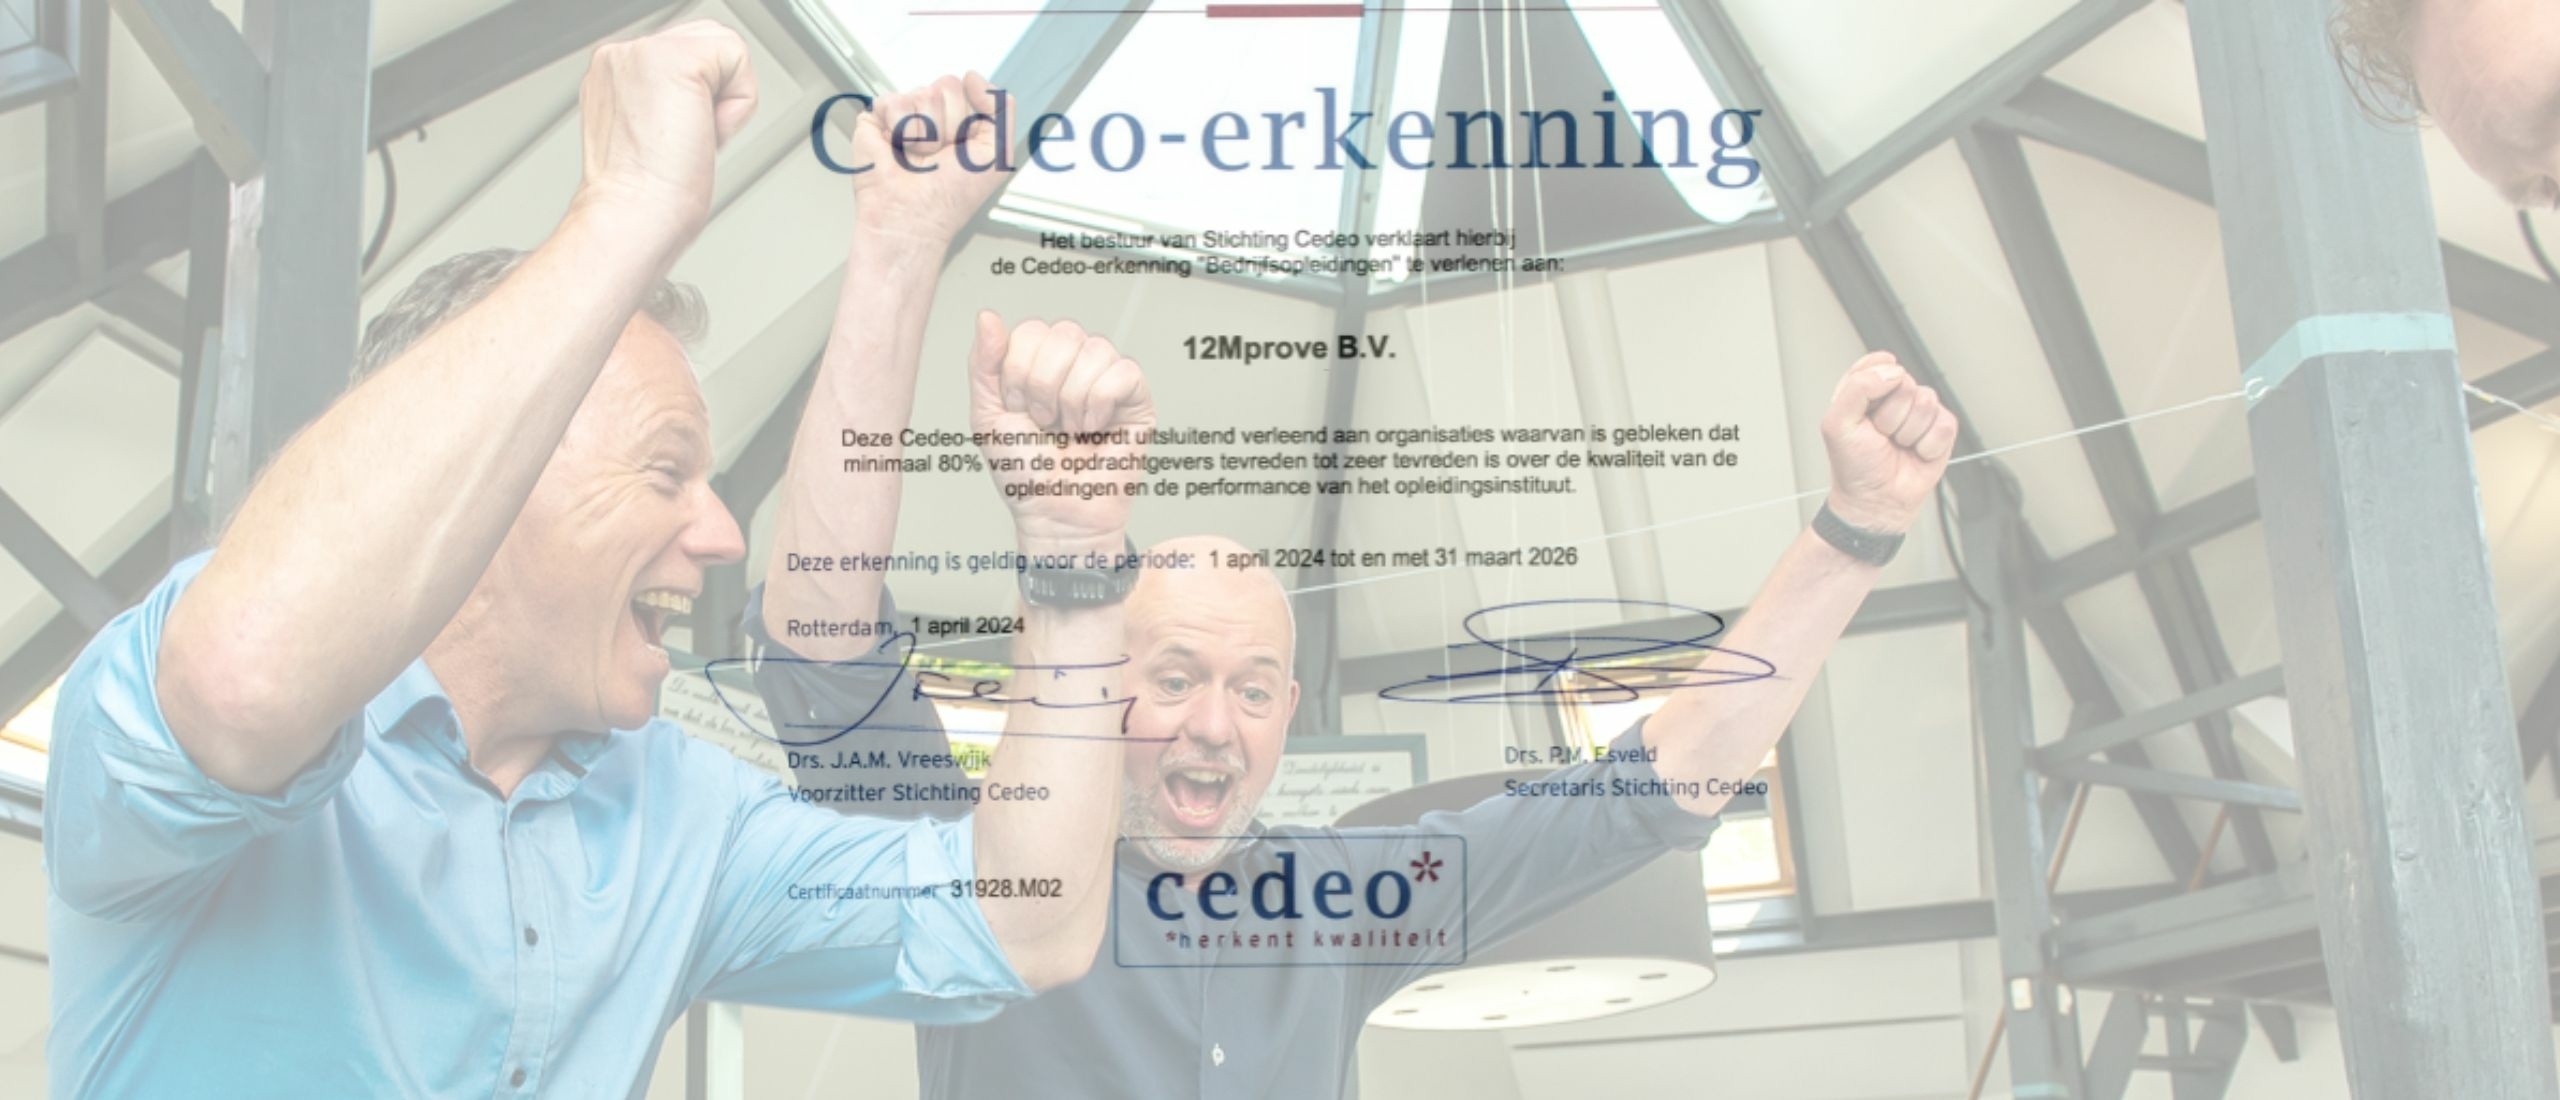 De kracht van klanttevredenheid: Een CEDEO-erkenning helpt om de juiste trainingspartner te kiezen voor jouw organisatie